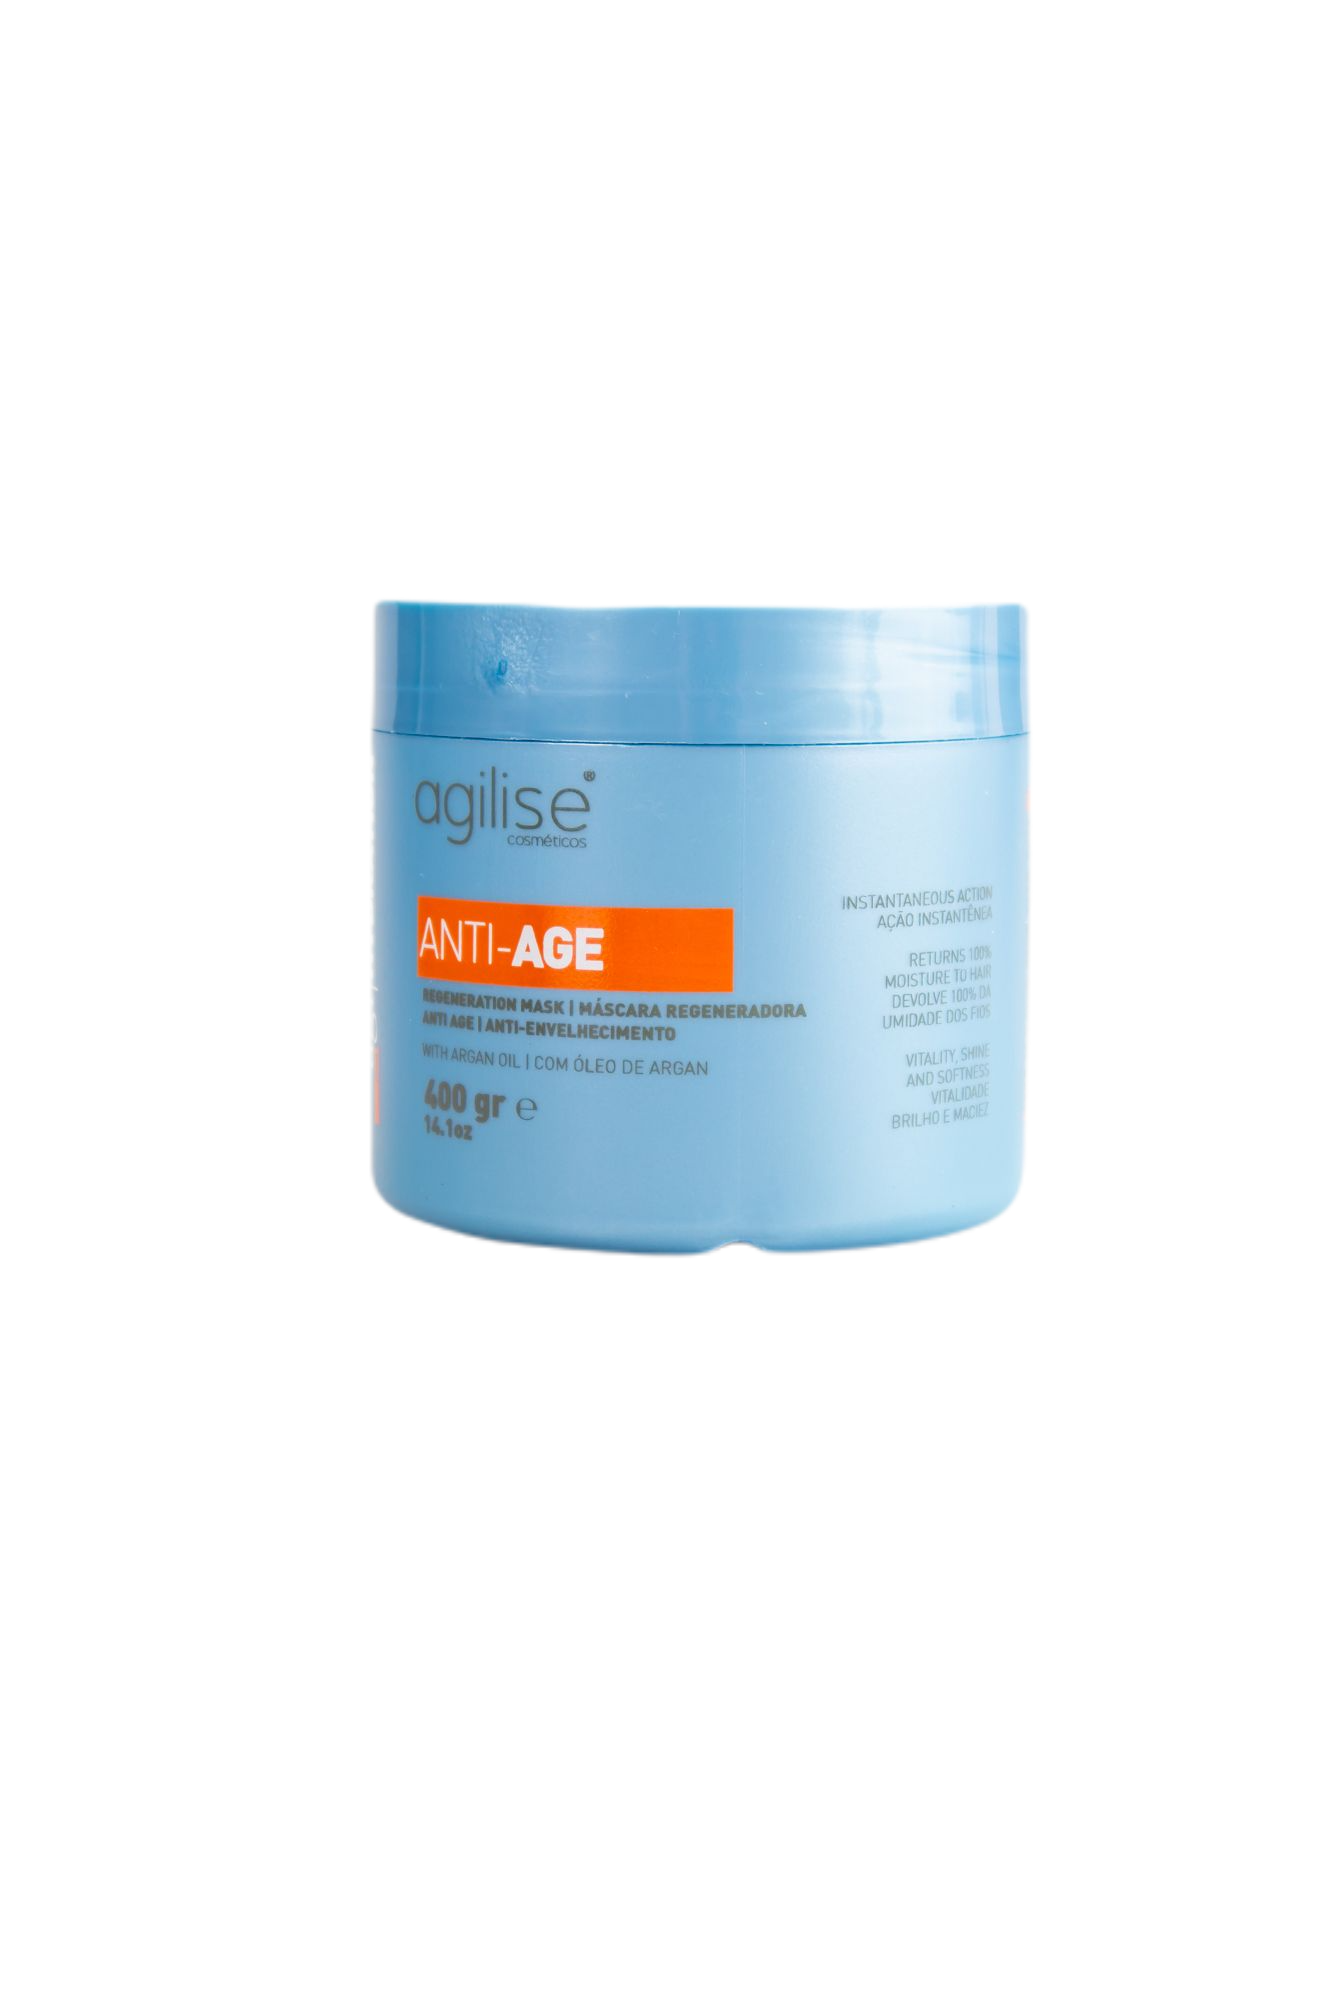 Agilise Professional Brazilian Keratin Treatment Agi Hydration Anti Age Regeneration Mask 400g - Agilise Profesional